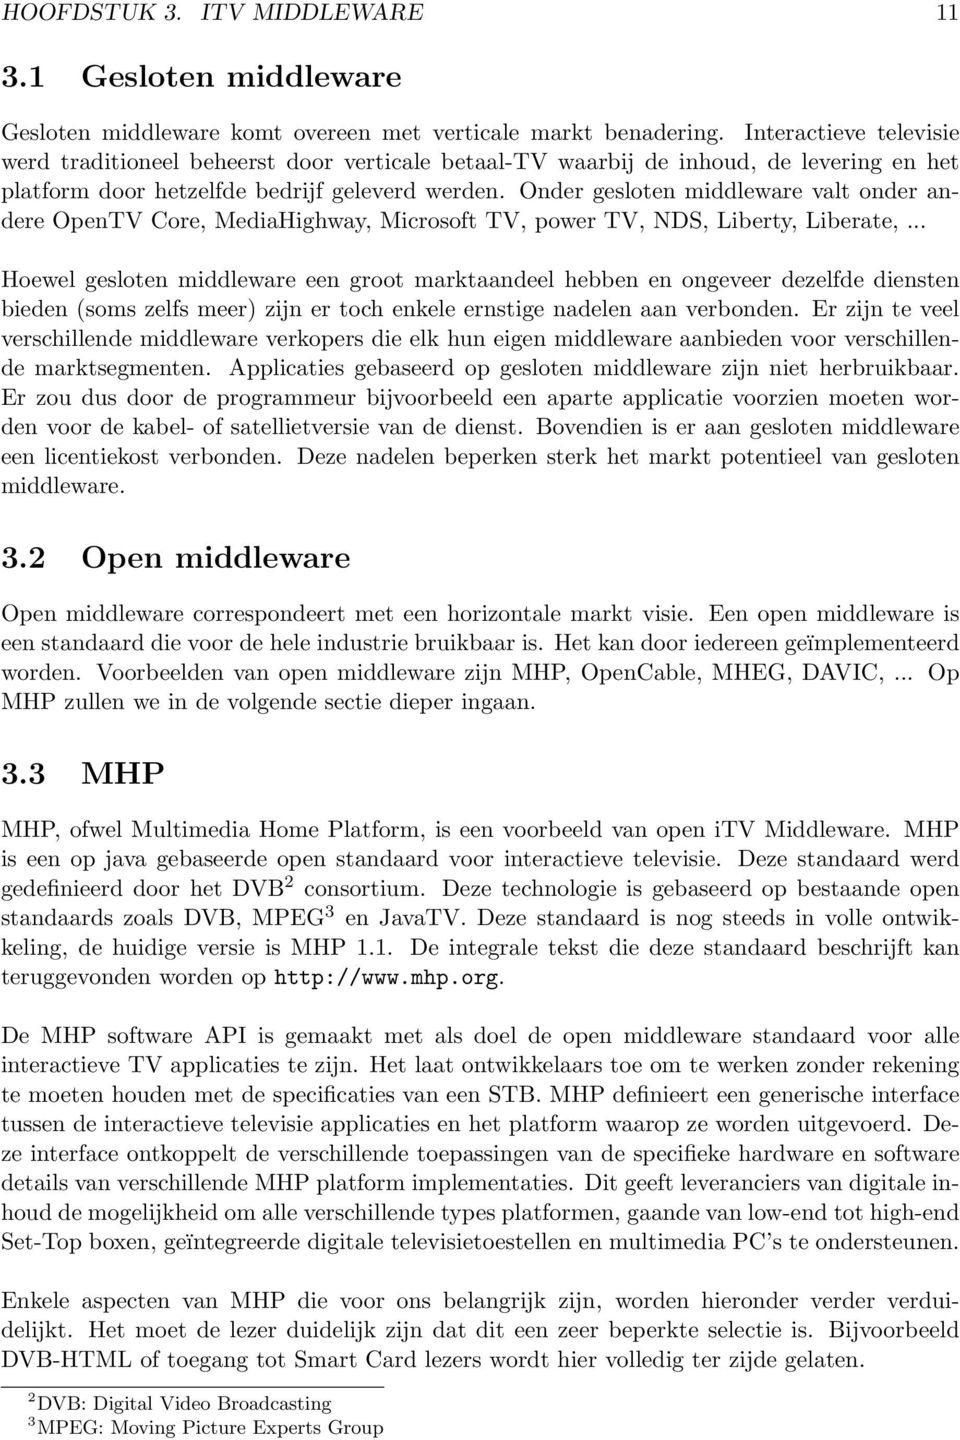 Onder gesloten middleware valt onder andere OpenTV Core, MediaHighway, Microsoft TV, power TV, NDS, Liberty, Liberate,.